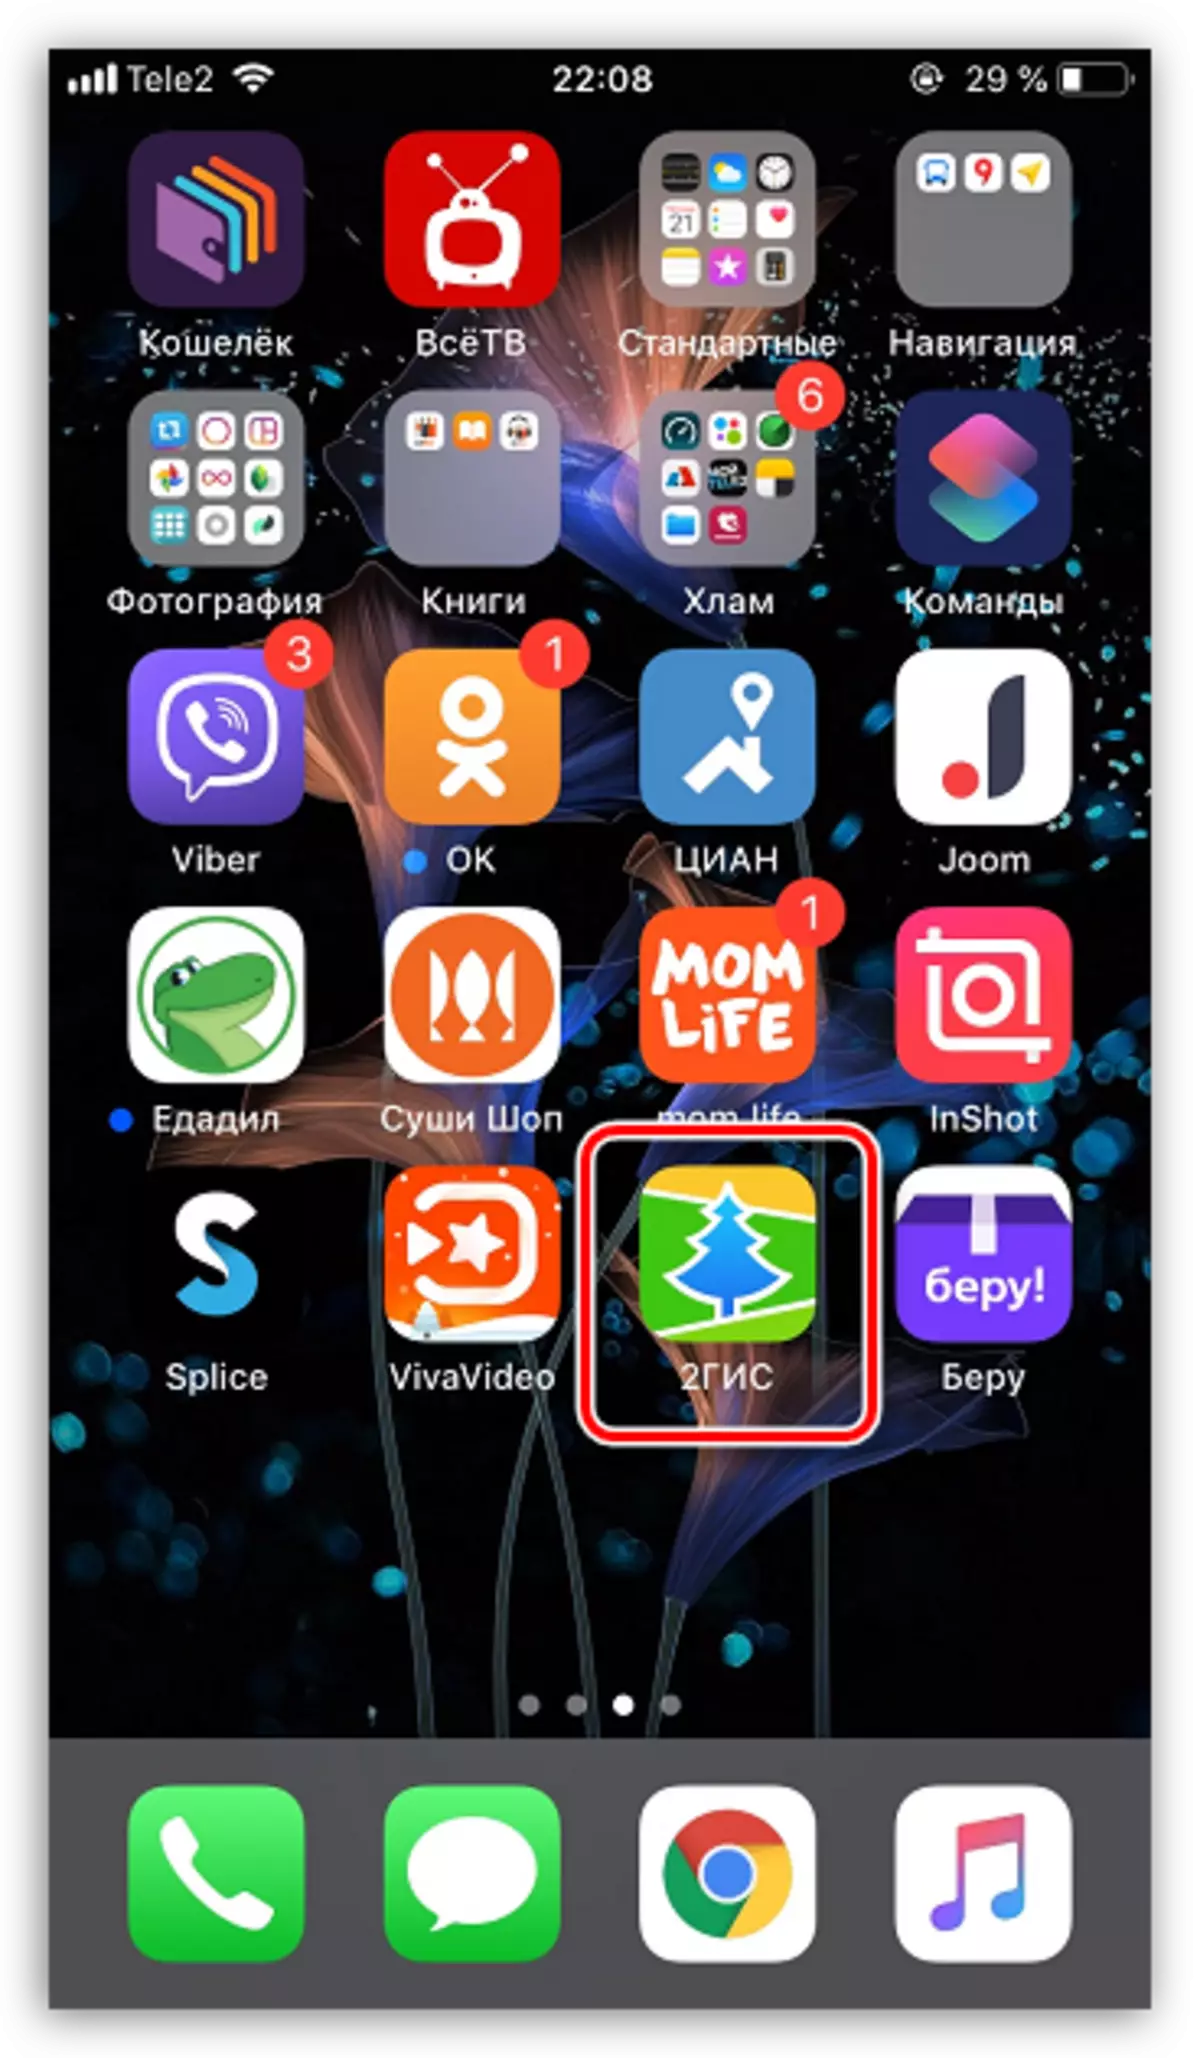 İPhone'daki App Store'dan indirilen uygulama